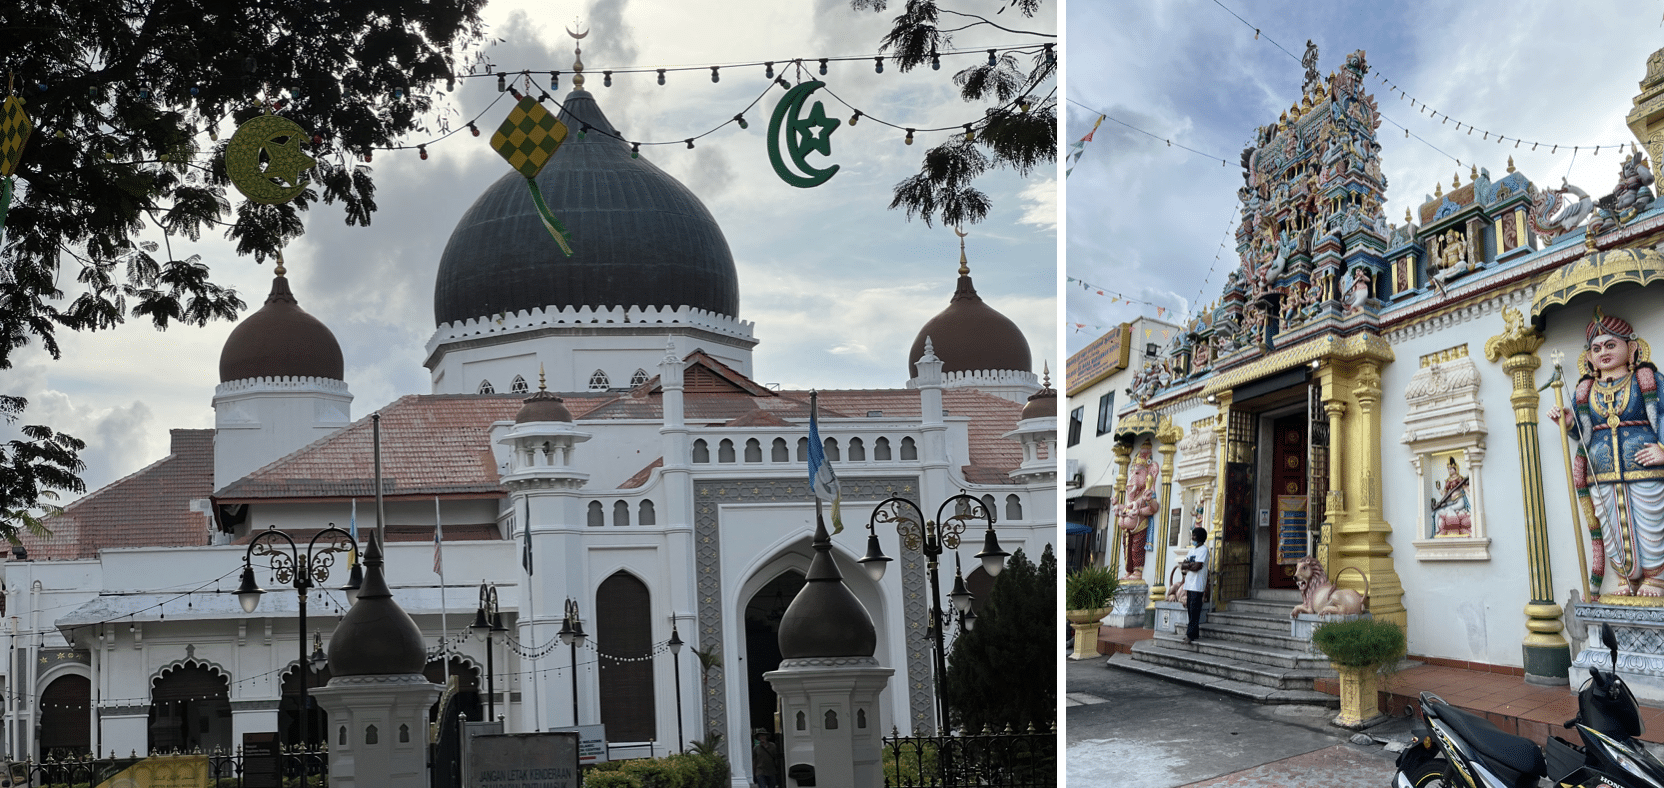 une mosquee et un temple indien a george town en malaisie